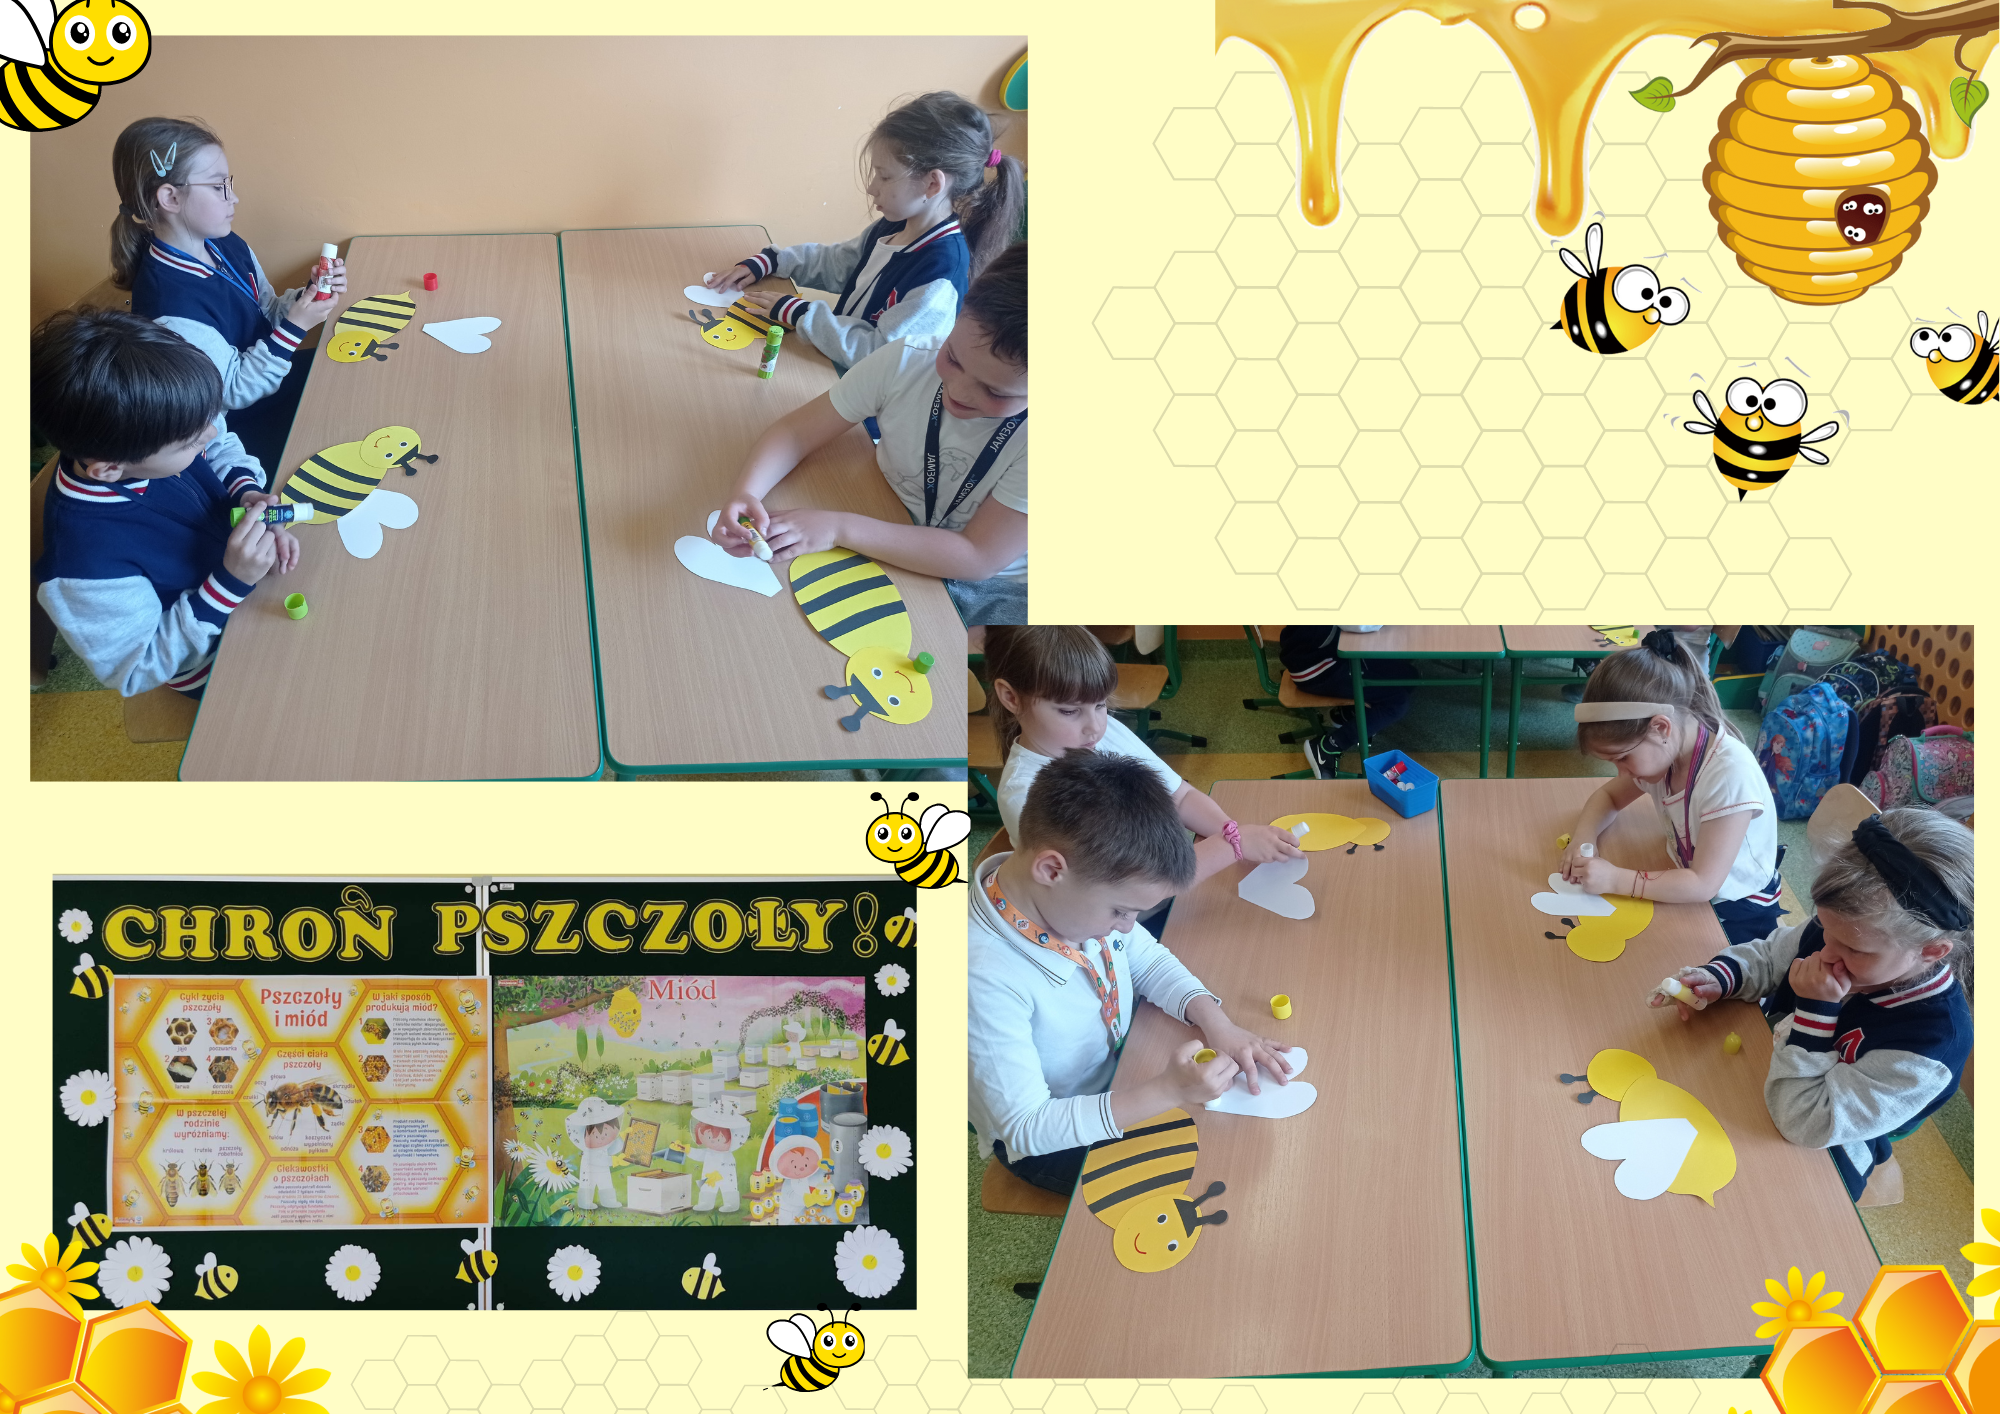 Zajęcia techniczno - plastyczne: uczniowie robią pszczoły z kolorowego papieru. Zdjęcie dekoracji tematycznej.